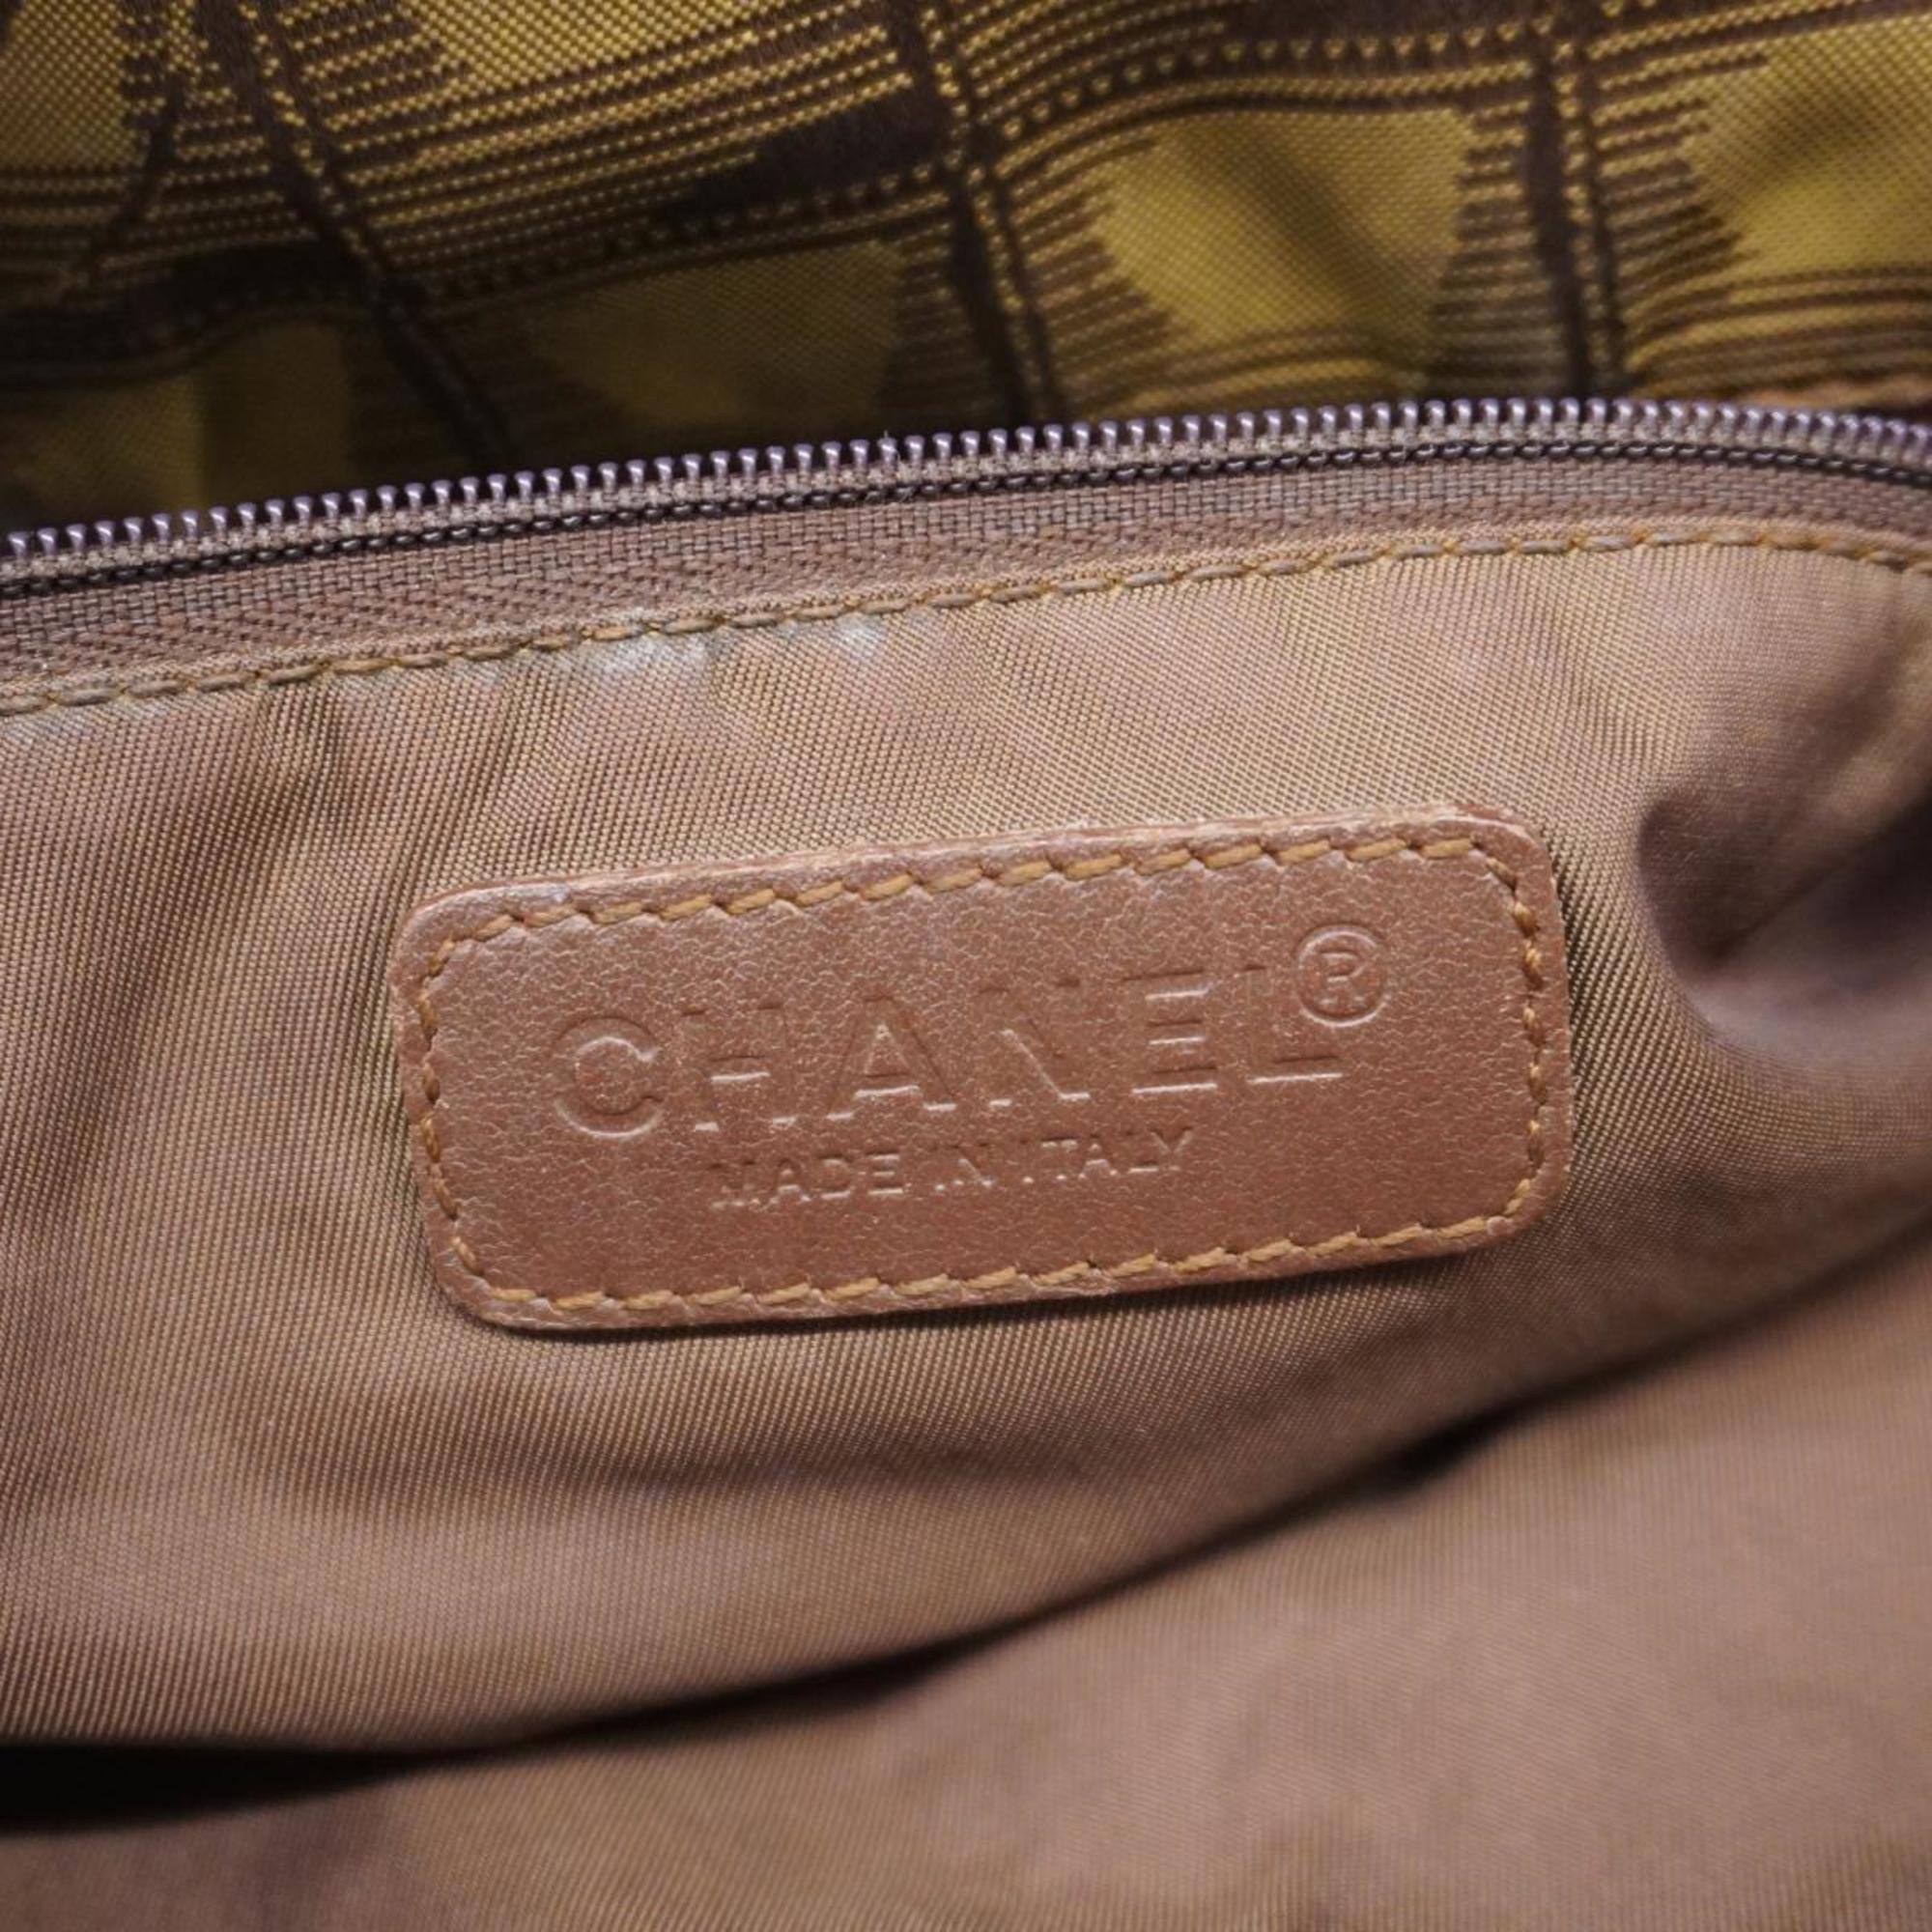 シャネル(Chanel) シャネル トートバッグ ニュートラベル ナイロン カーキ ブラウン  レディース